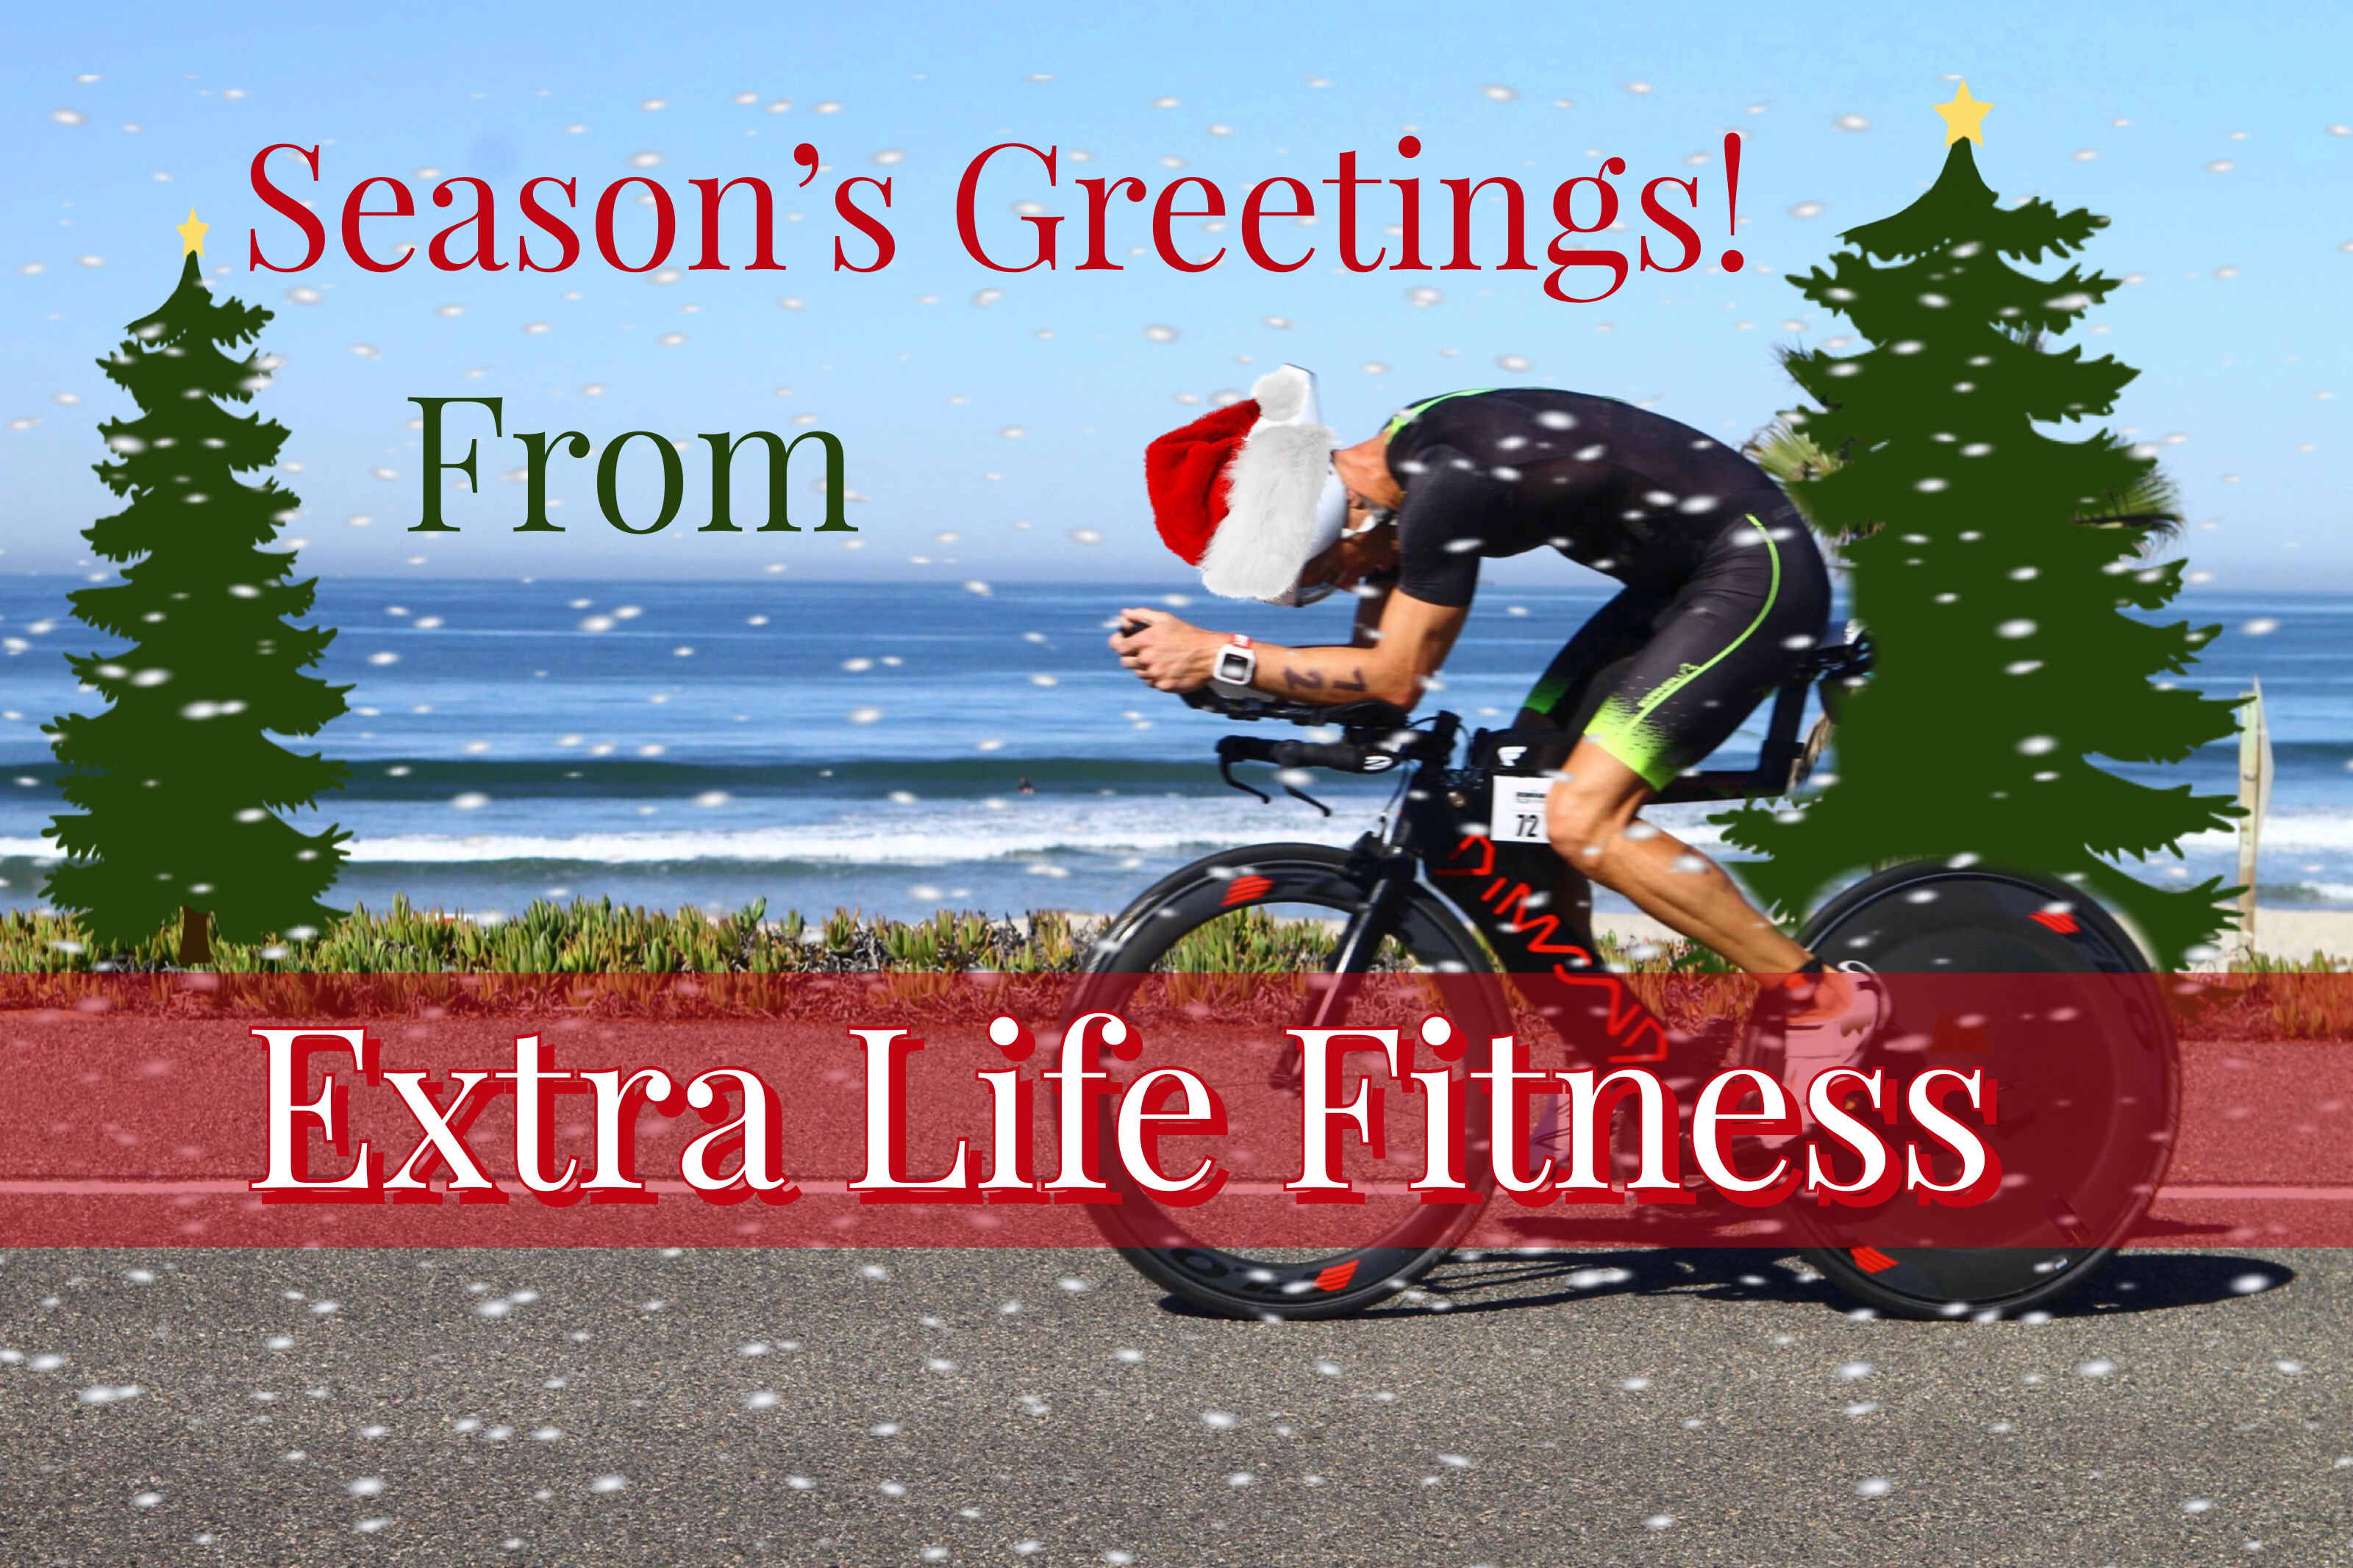 Happy holidays from Extra Life Fitness